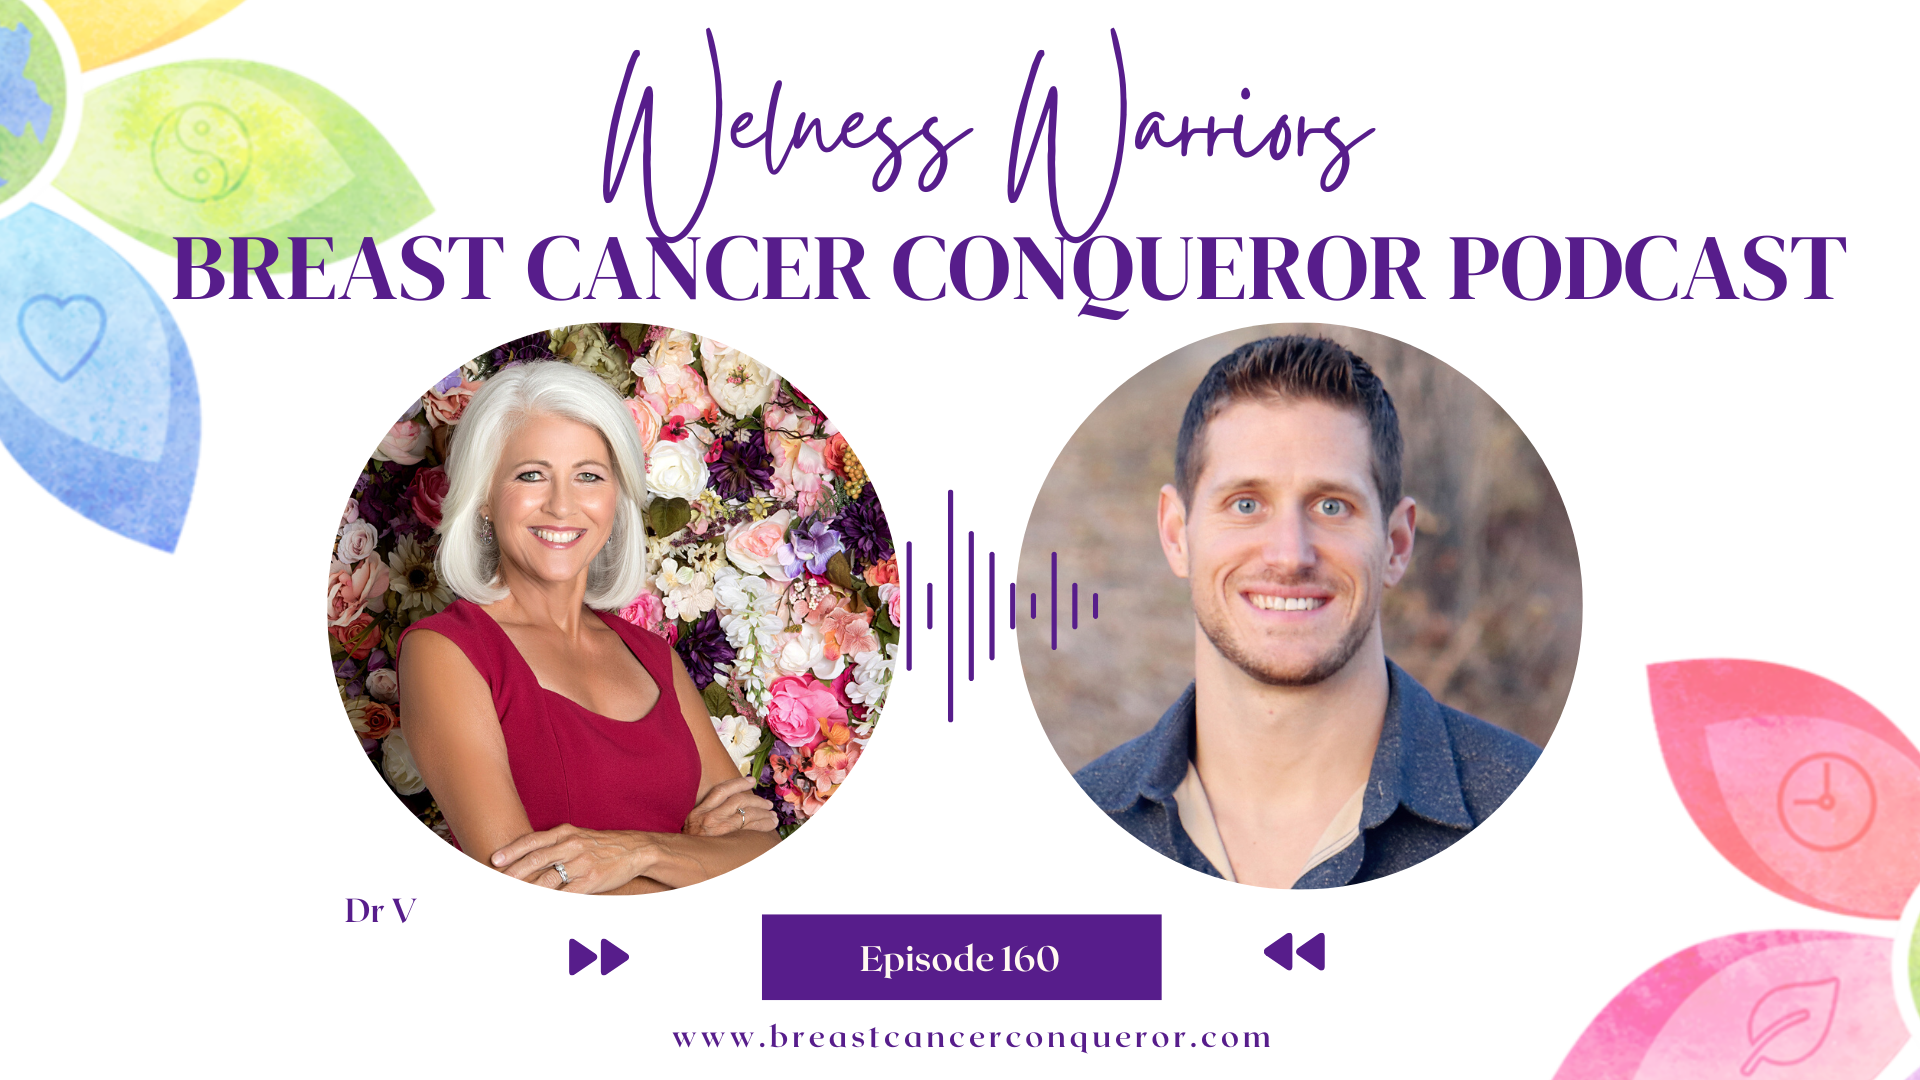 Nathan Crane Stem Cell Podcast